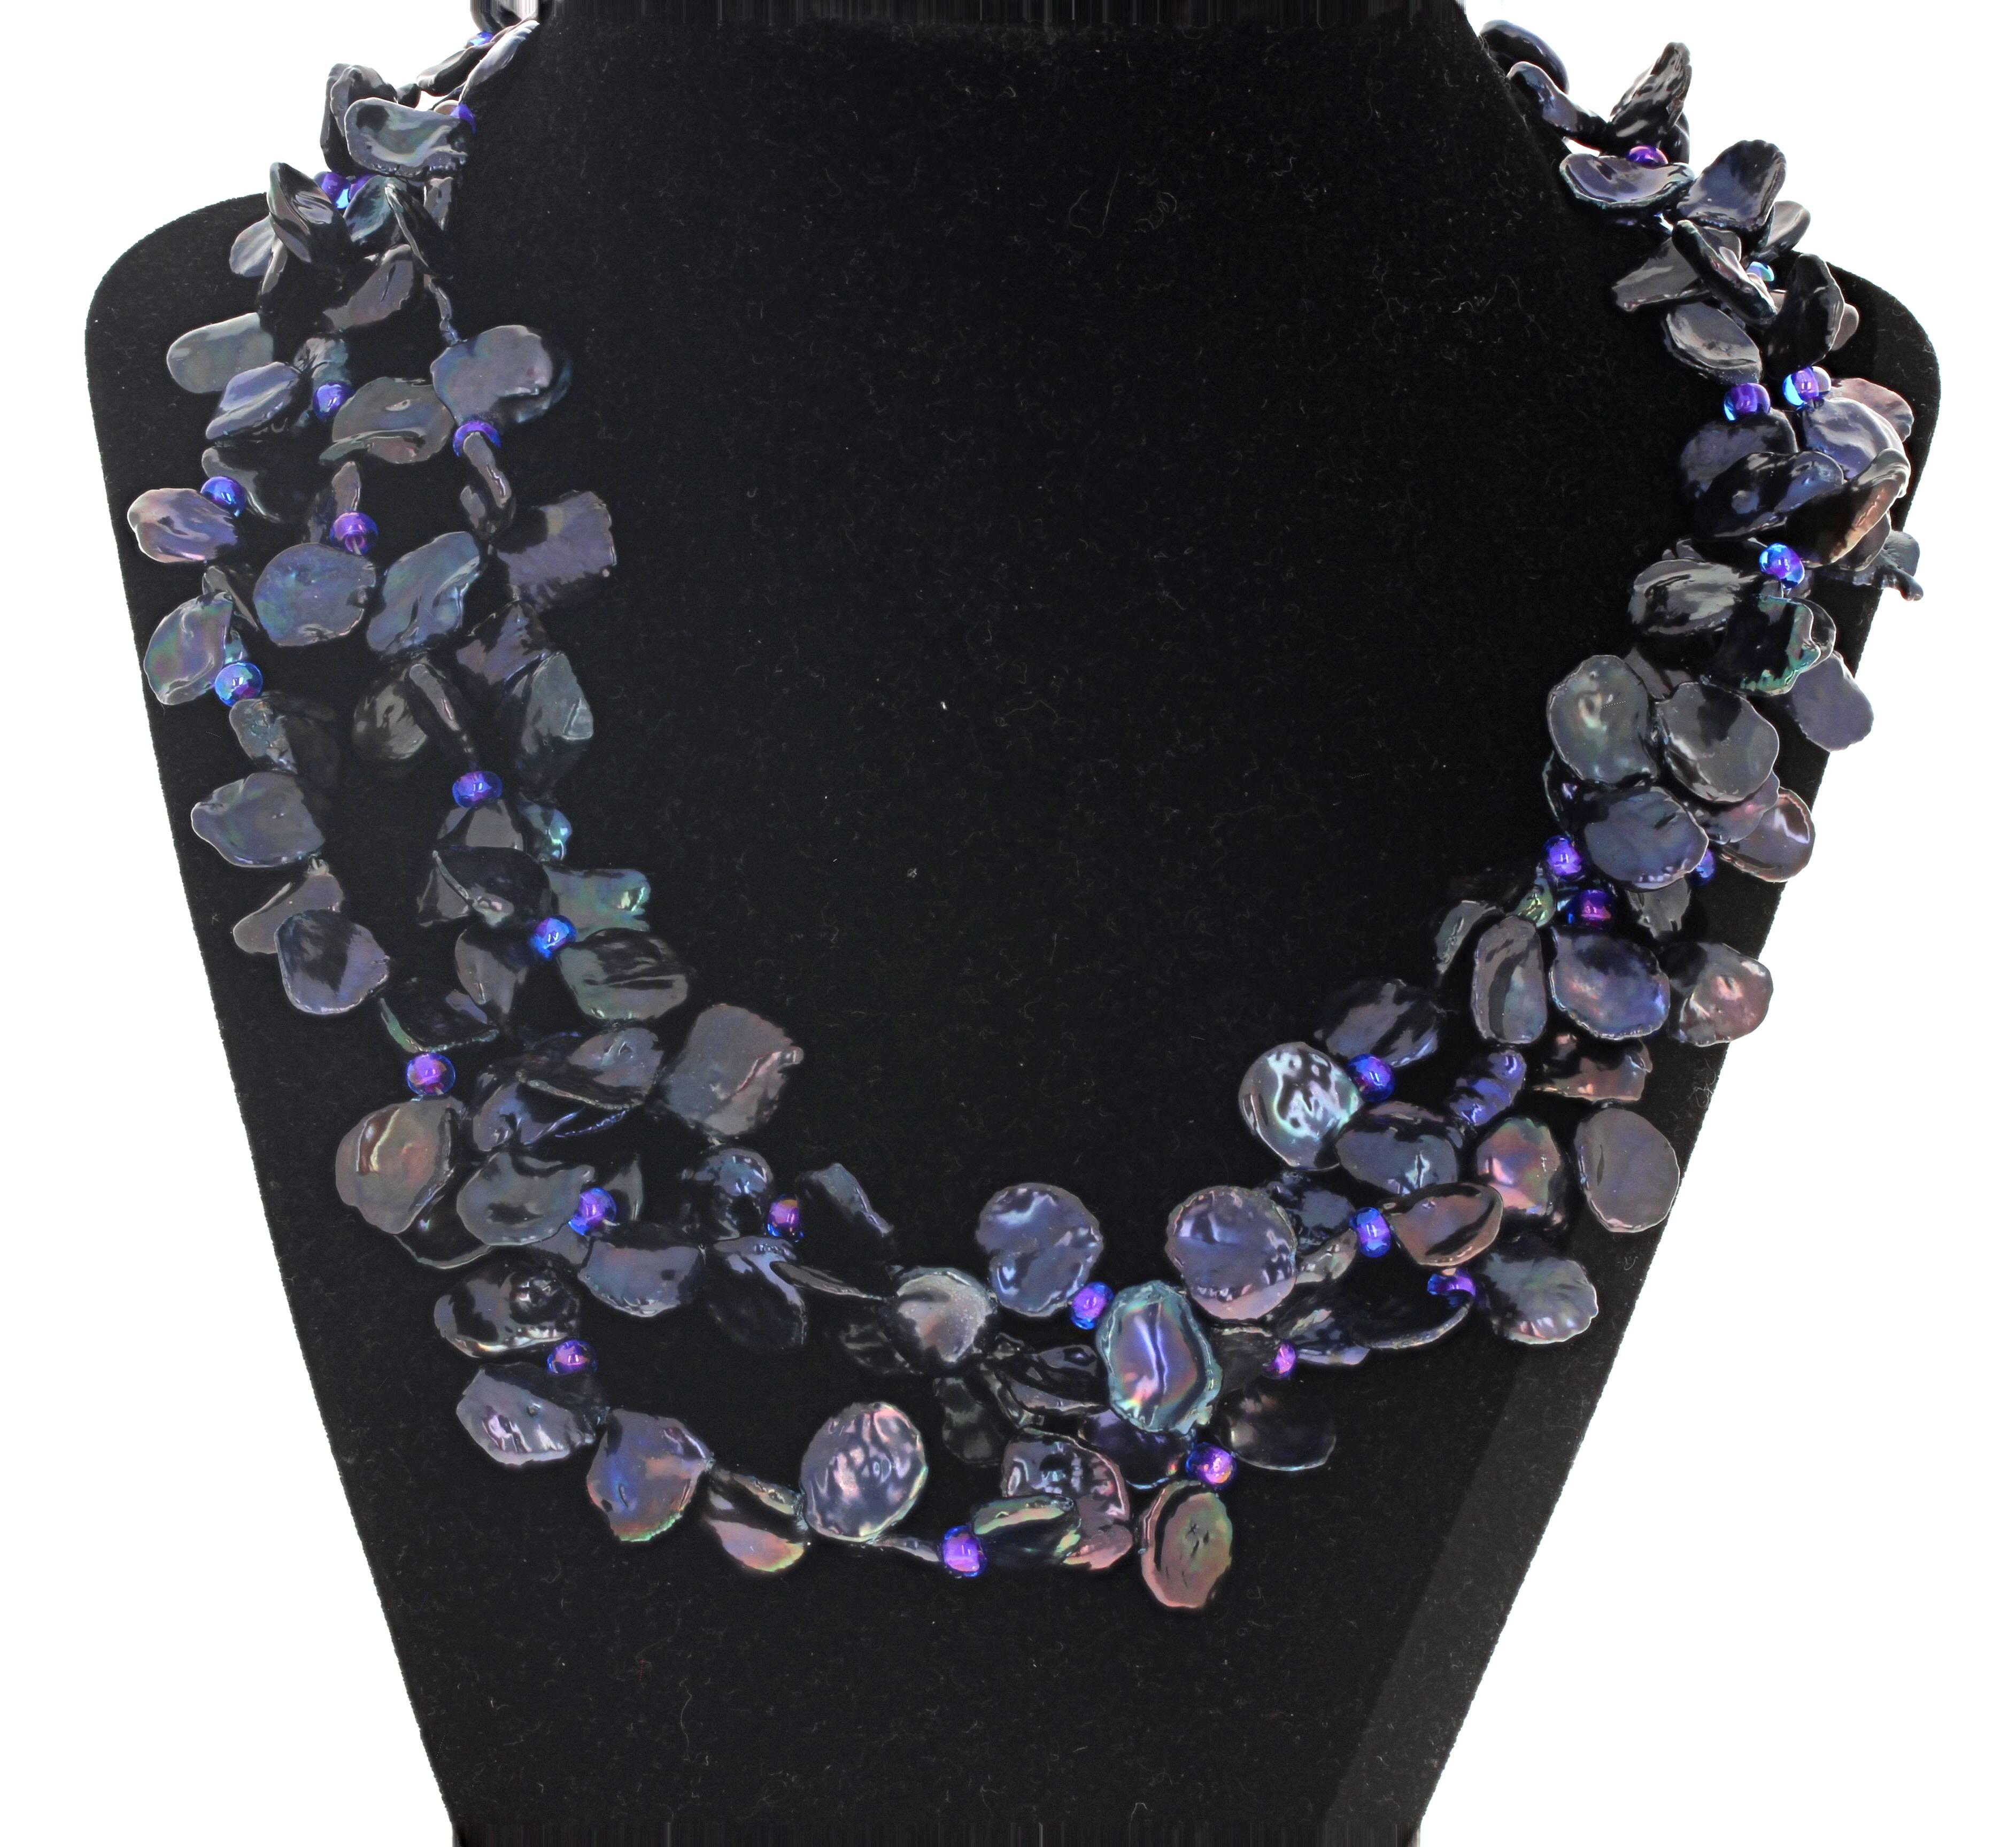 Ce triple collier de perles de Keshi naturelles et véritables est d'une longueur de 19 pouces.  Elles sont multicolores et d'un bleu violacé étincelant lorsque la lumière les éclaire.  Les plus grands mesurent environ 14 mm.  Il est amusant de le